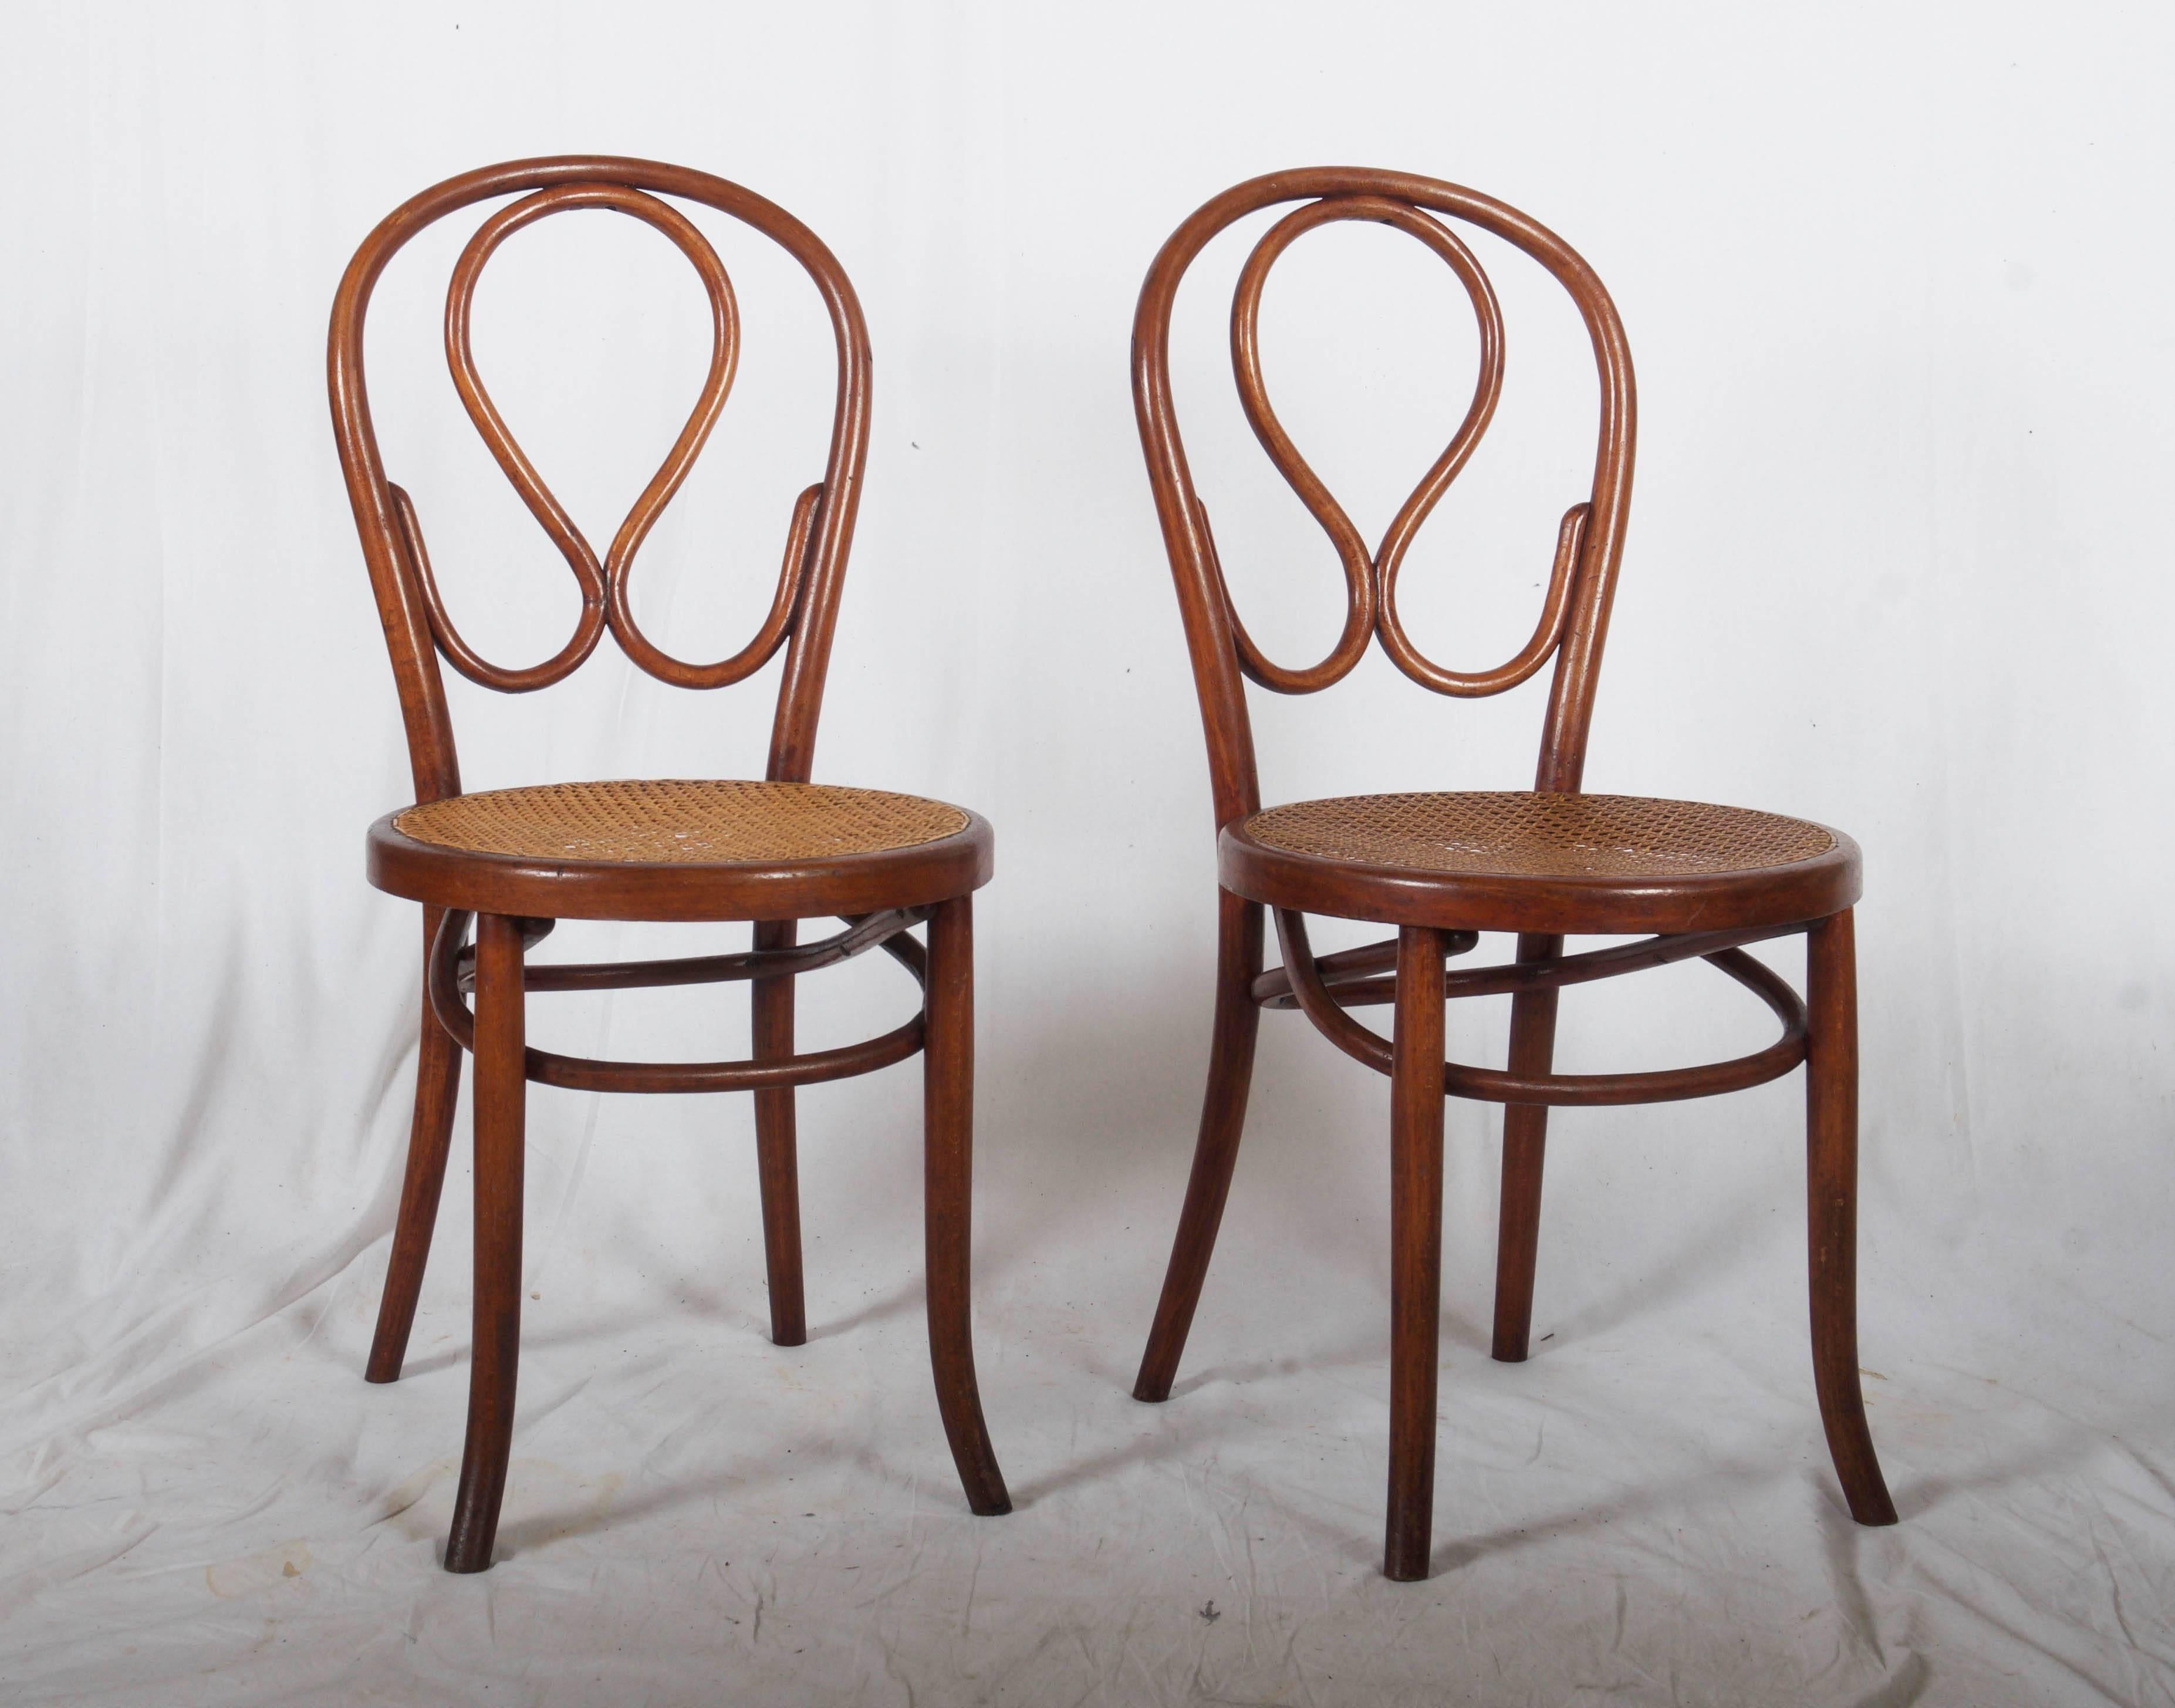 Chaises en bois courbé comme Thonet No 20. Nouveaux cannages sur toutes les chaises.
Quatre pièces disponibles
Délai de livraison de 3 à 4 semaines.
 